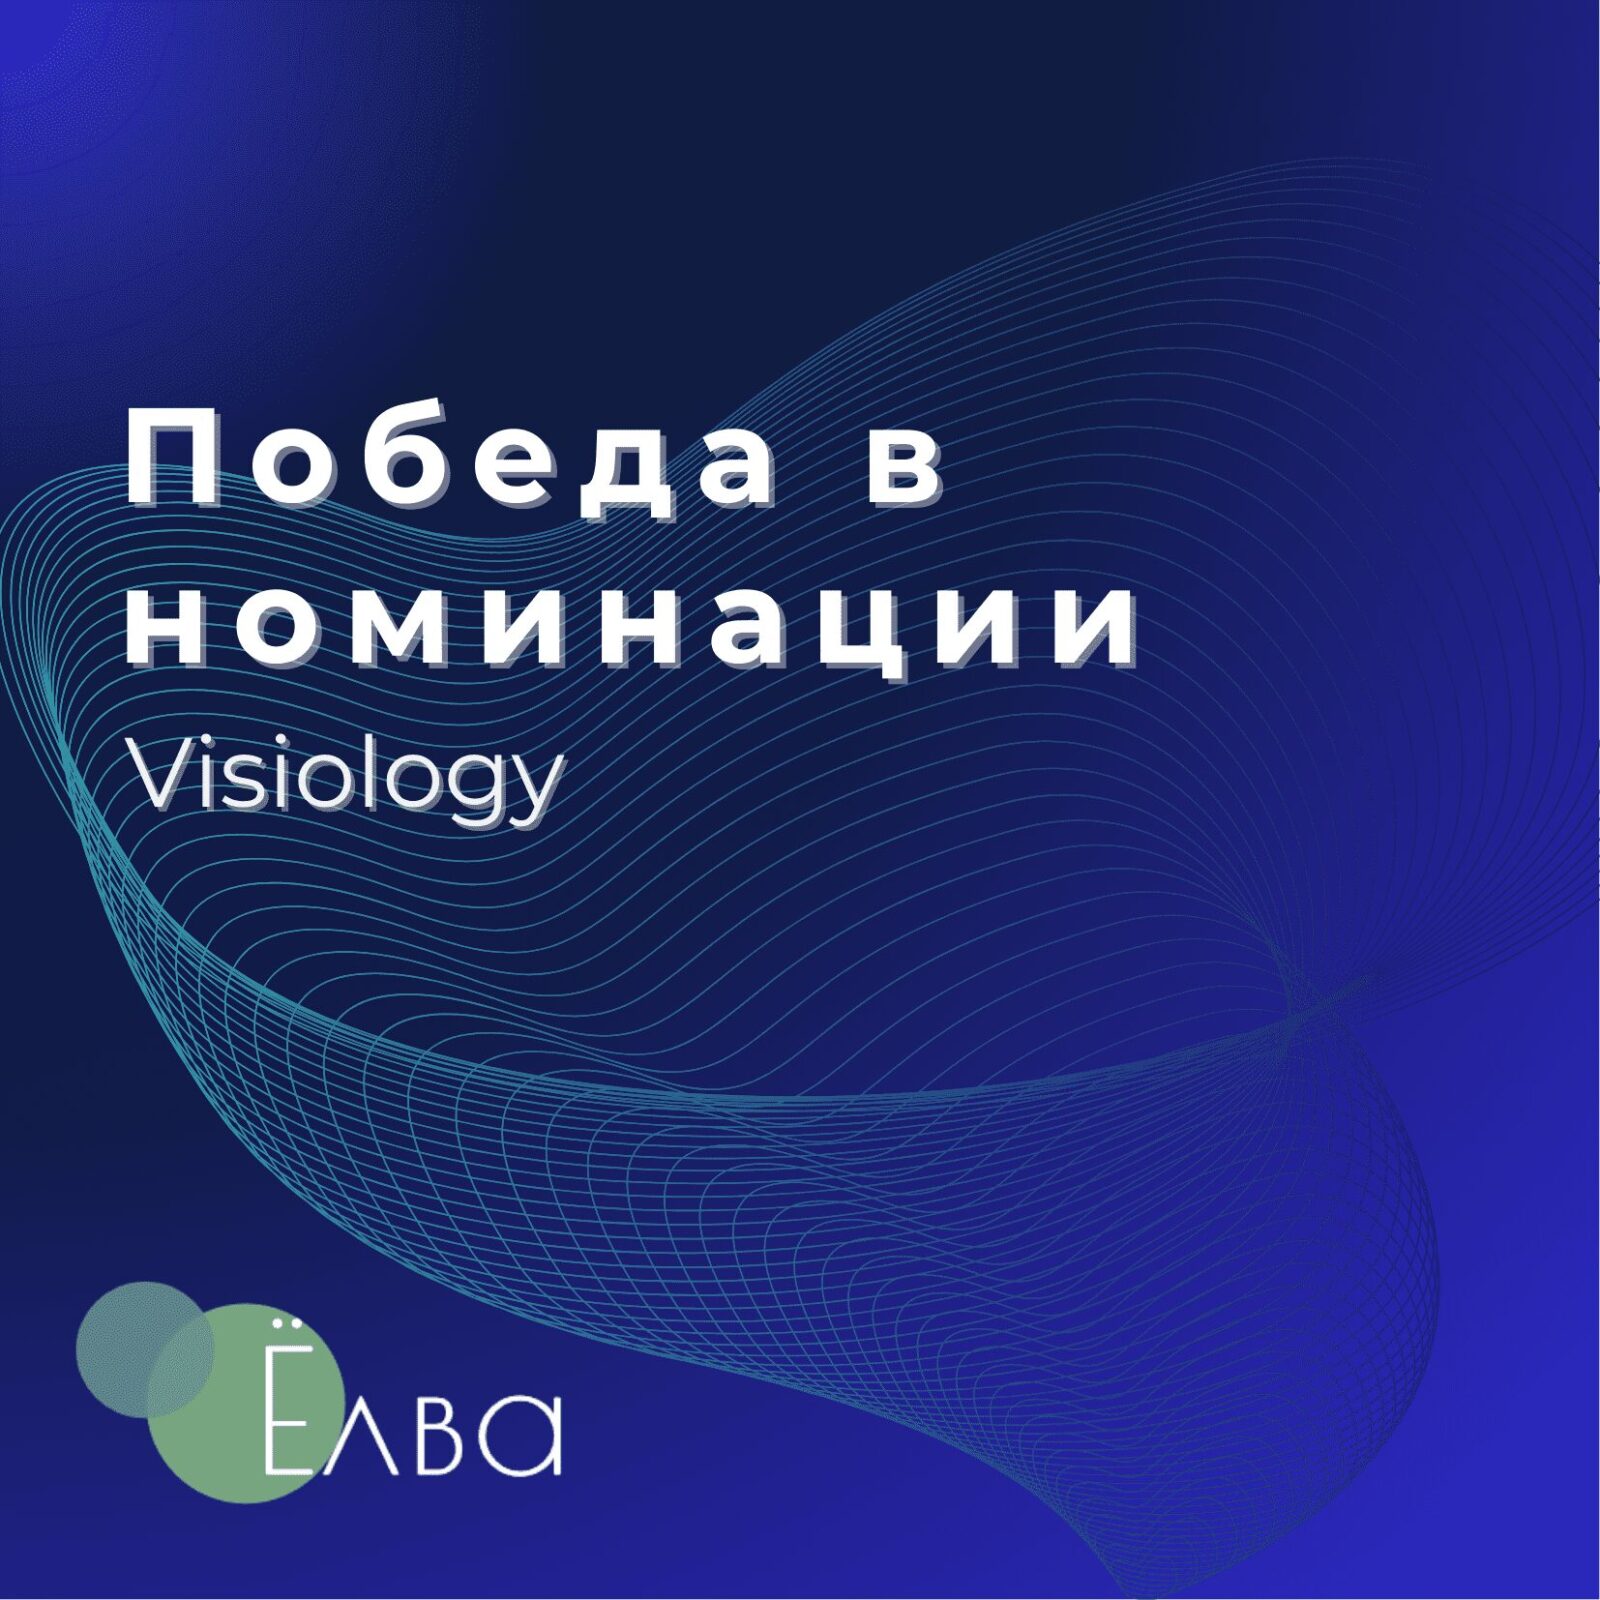 «Ёлва» победила в номинации «Энергия и надежность» в рамках партнерства с Visiology